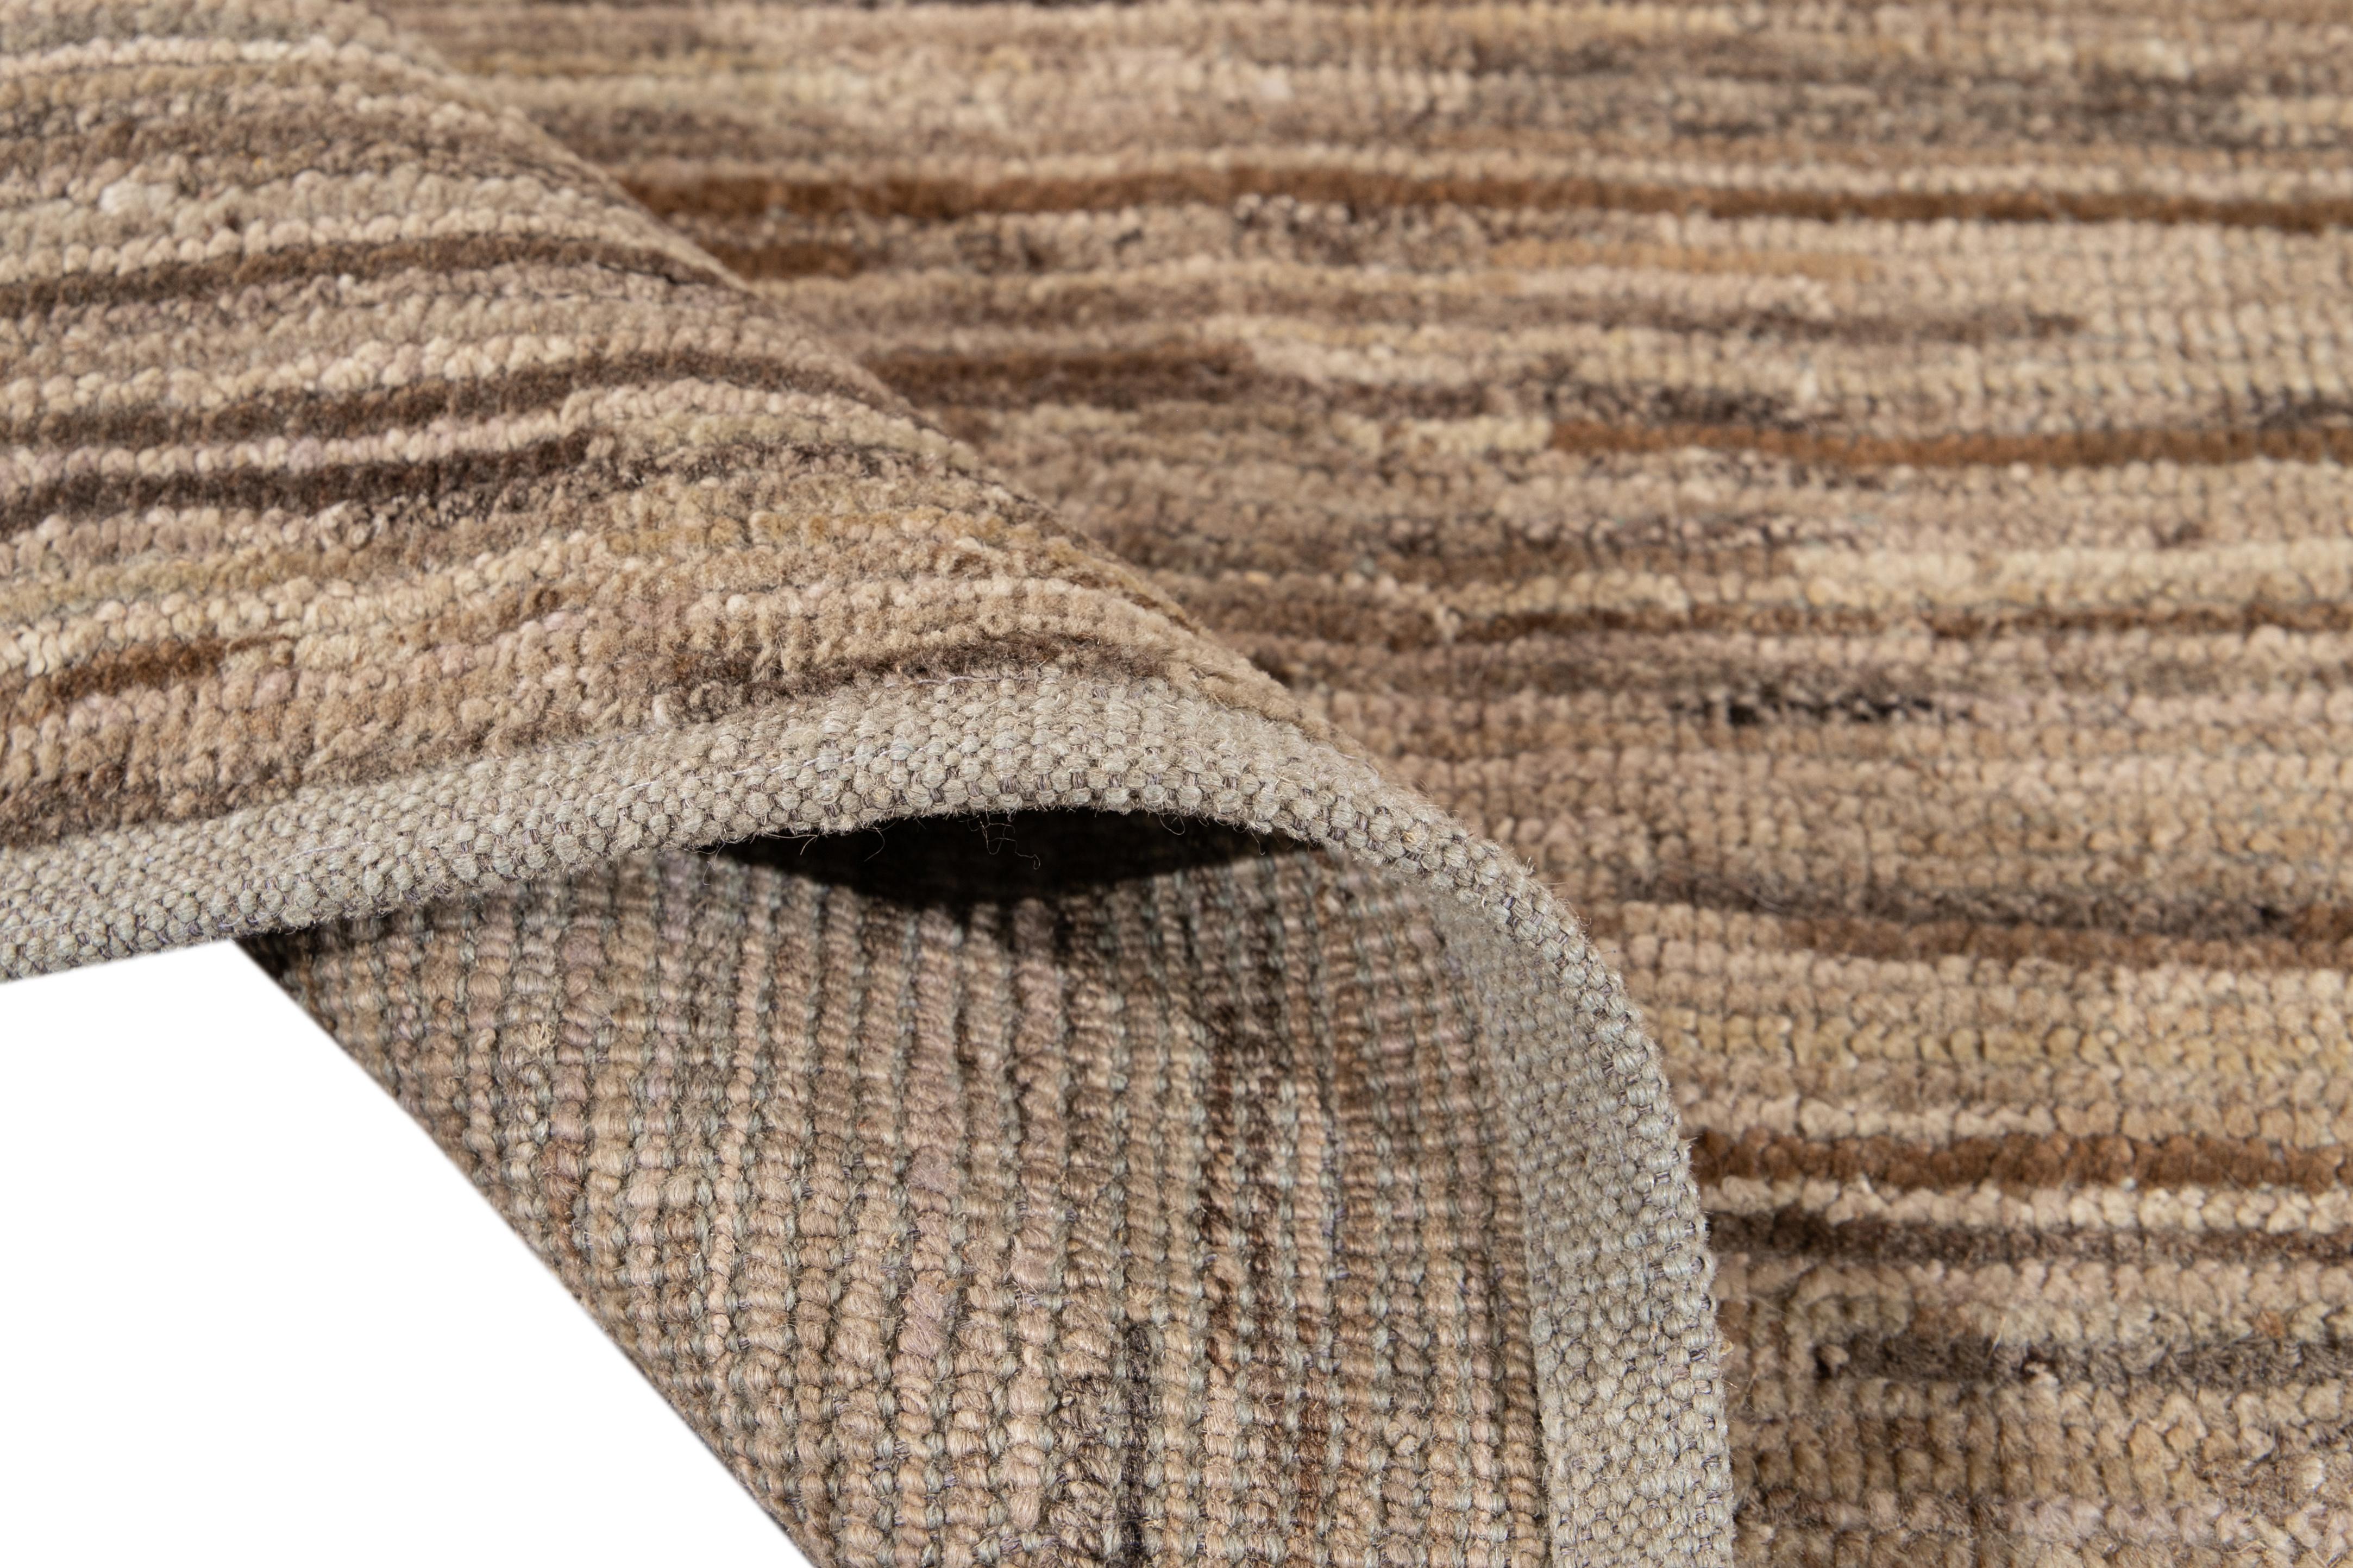 Magnifique tapis de style marocain en laine nouée à la main avec un champ beige. Ce tapis présente des accents de brun dans un magnifique motif géométrique abstrait.

Ce tapis mesure : 3'8